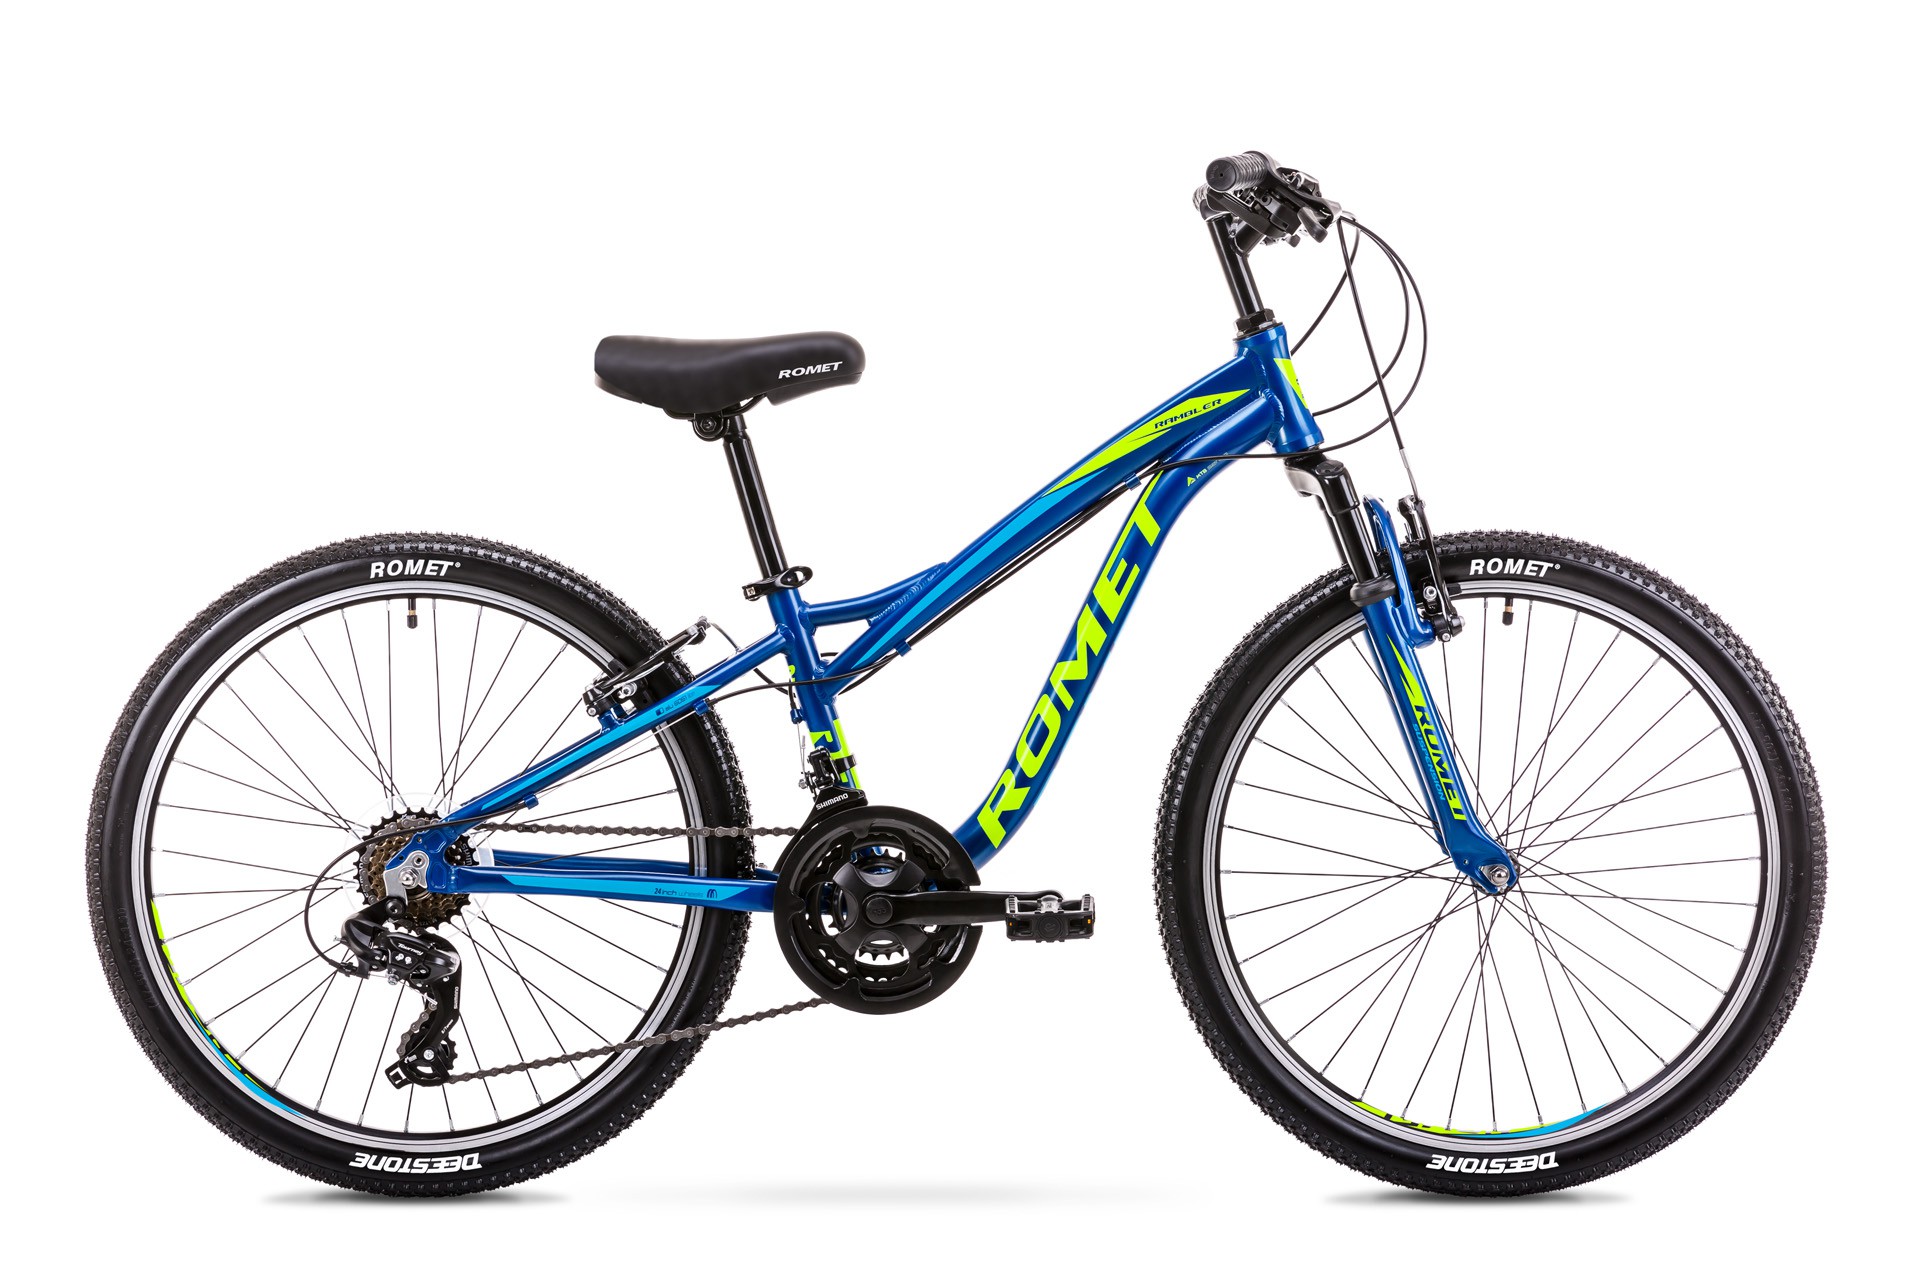 Алу 24. Велосипед Ромет. Romet rambler Fit. Детский велосипед алюминиевая рама 24. Велосипед спортивный синий.